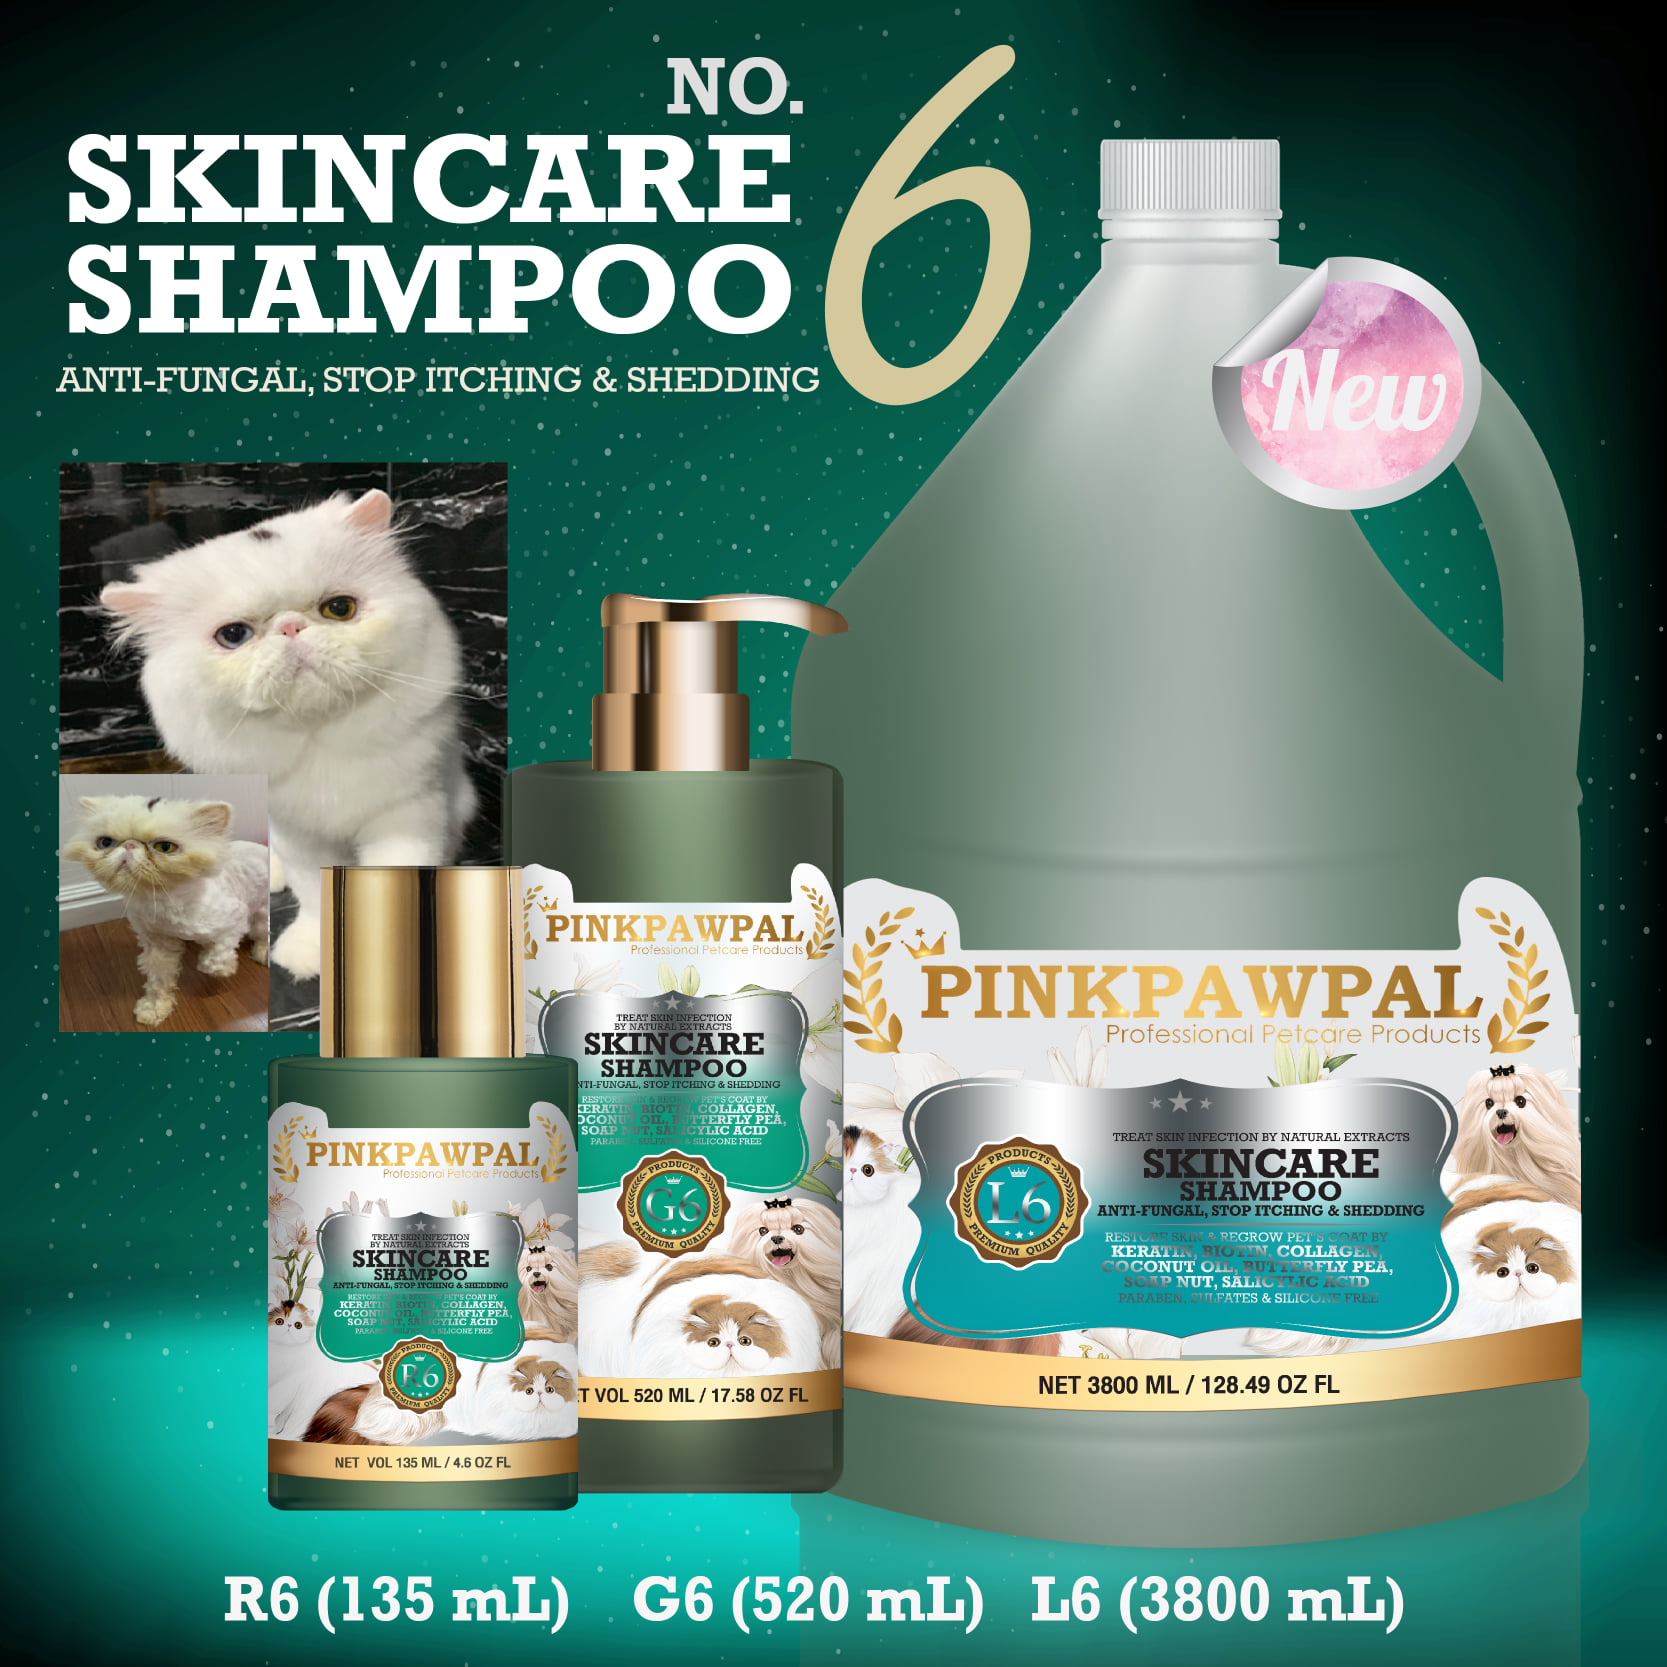 พิ้งค์พอว์พัล No.6 แชมพูล้างคราบมัน เชื้อรา ลดคัน ขนนุ่ม ไม่มัน ขนาด 135/520/3800 มล. (Pinkpawpal No.6 Skincare Shampoo for Pets 135/520/3800 ml.)